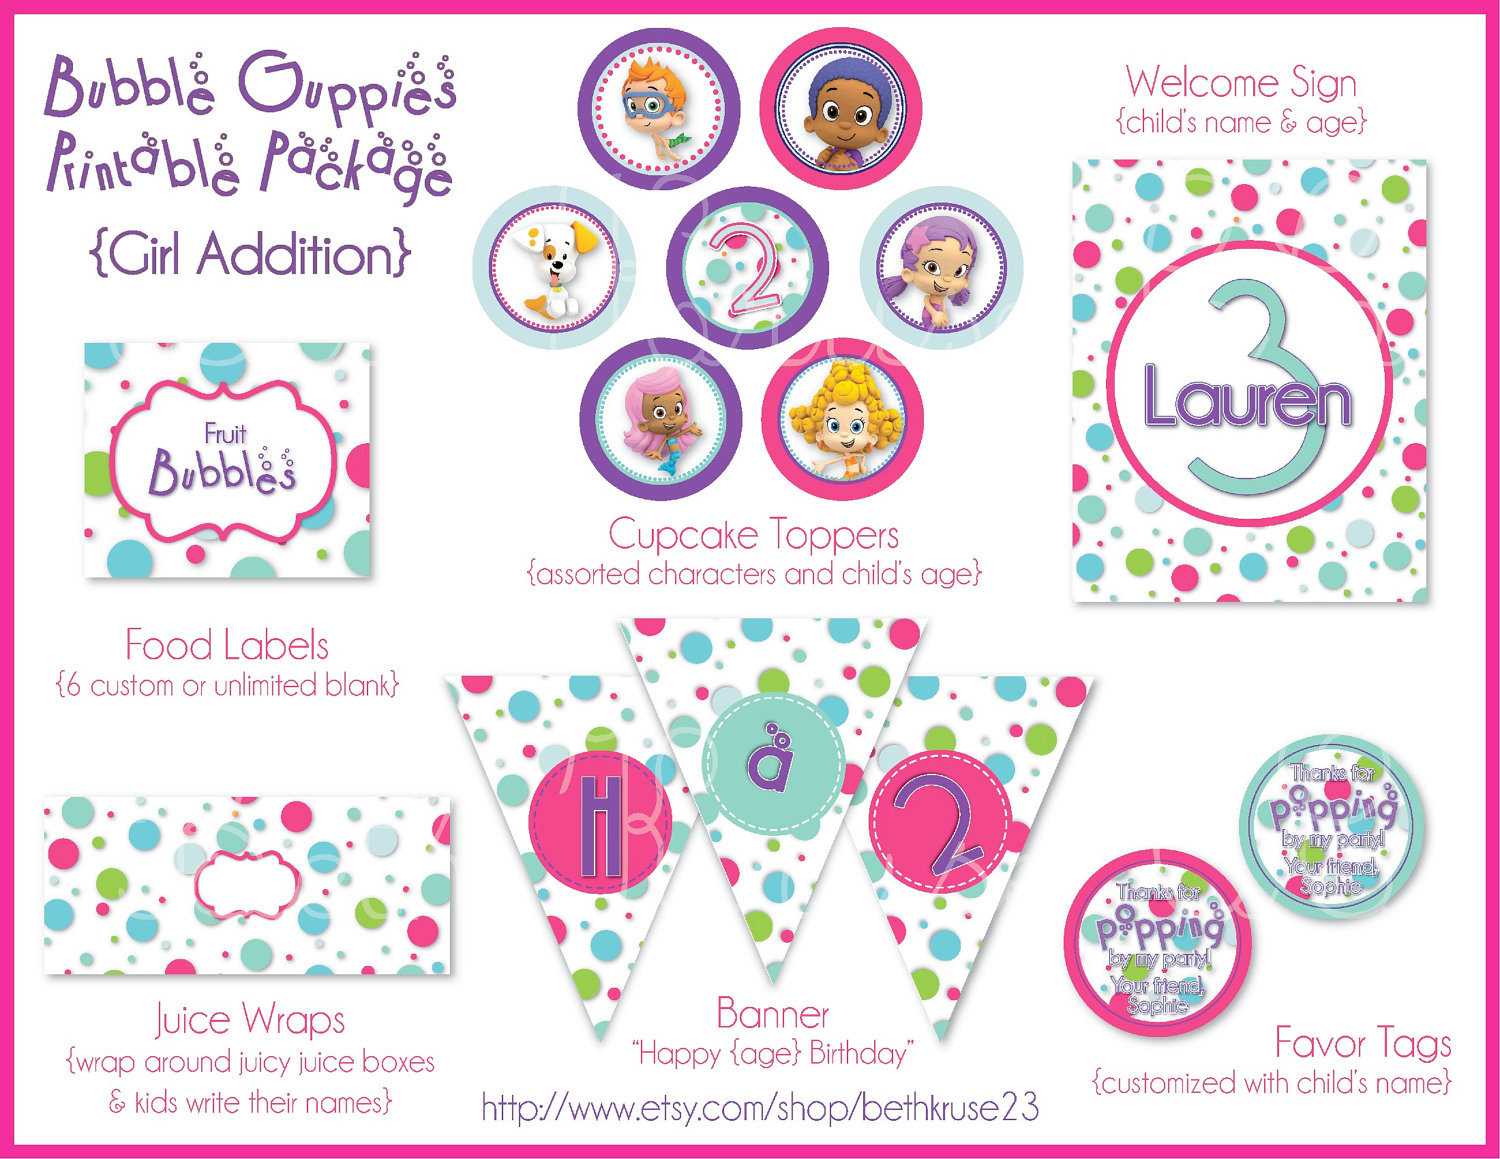 Free Bubble Guppies Invitation Template ] – Bubble Guppies For Bubble Guppies Birthday Banner Template